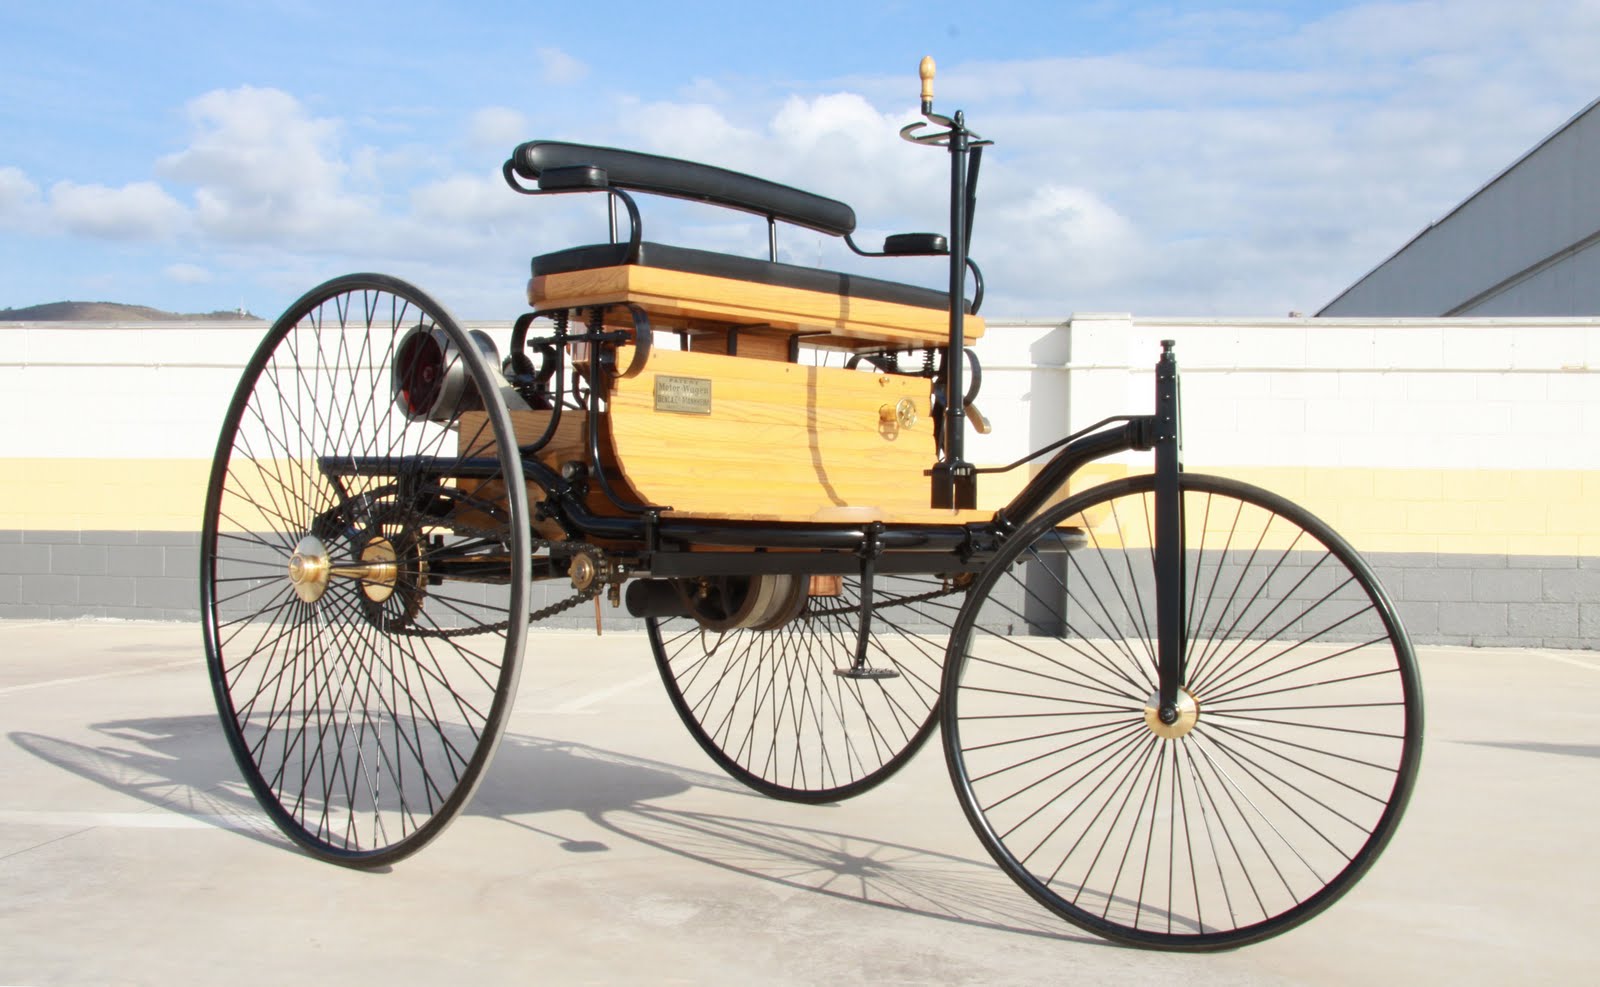 Первые машины название. Benz Patent-Motorwagen 1886.